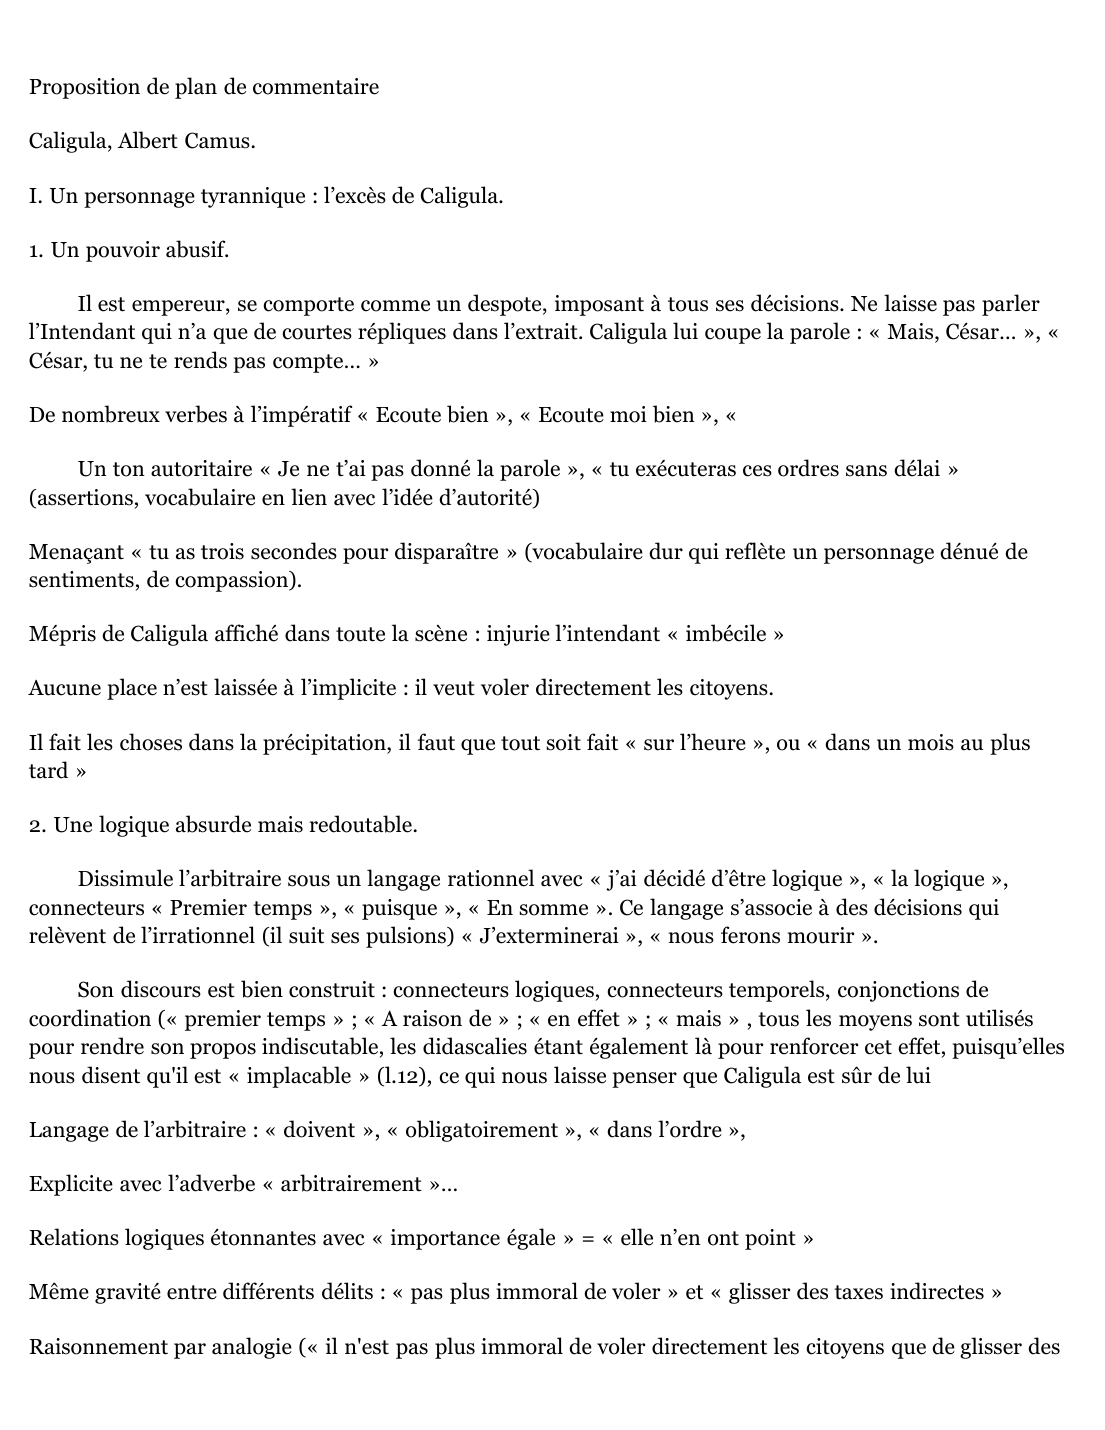 Prévisualisation du document Proposition de plan de commentaire   Caligula et l'Intendant, Albert Camus.